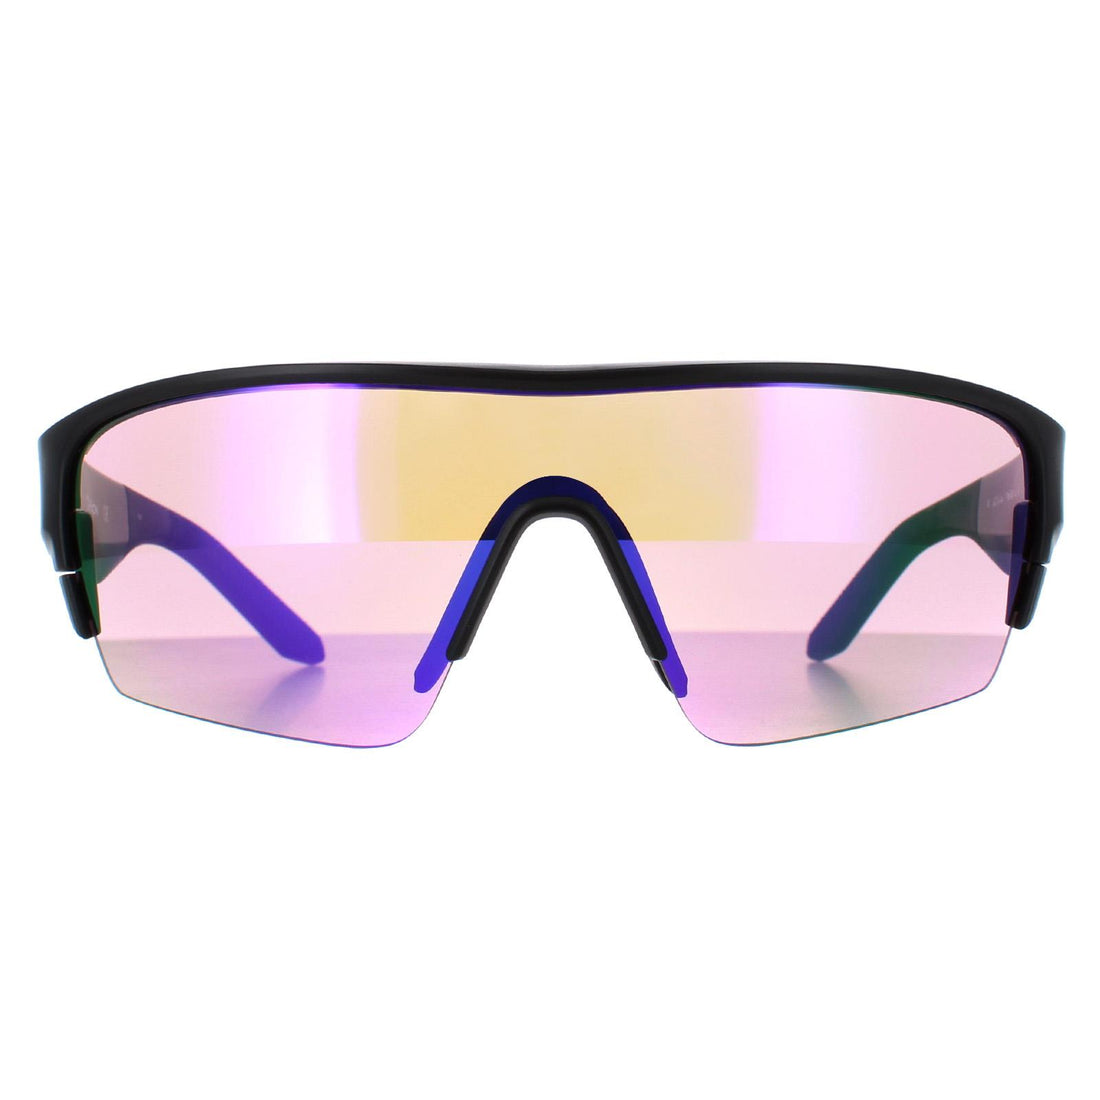 Dragon Tracer X Sunglasses Matte Black / Lumalens Purple & Spare